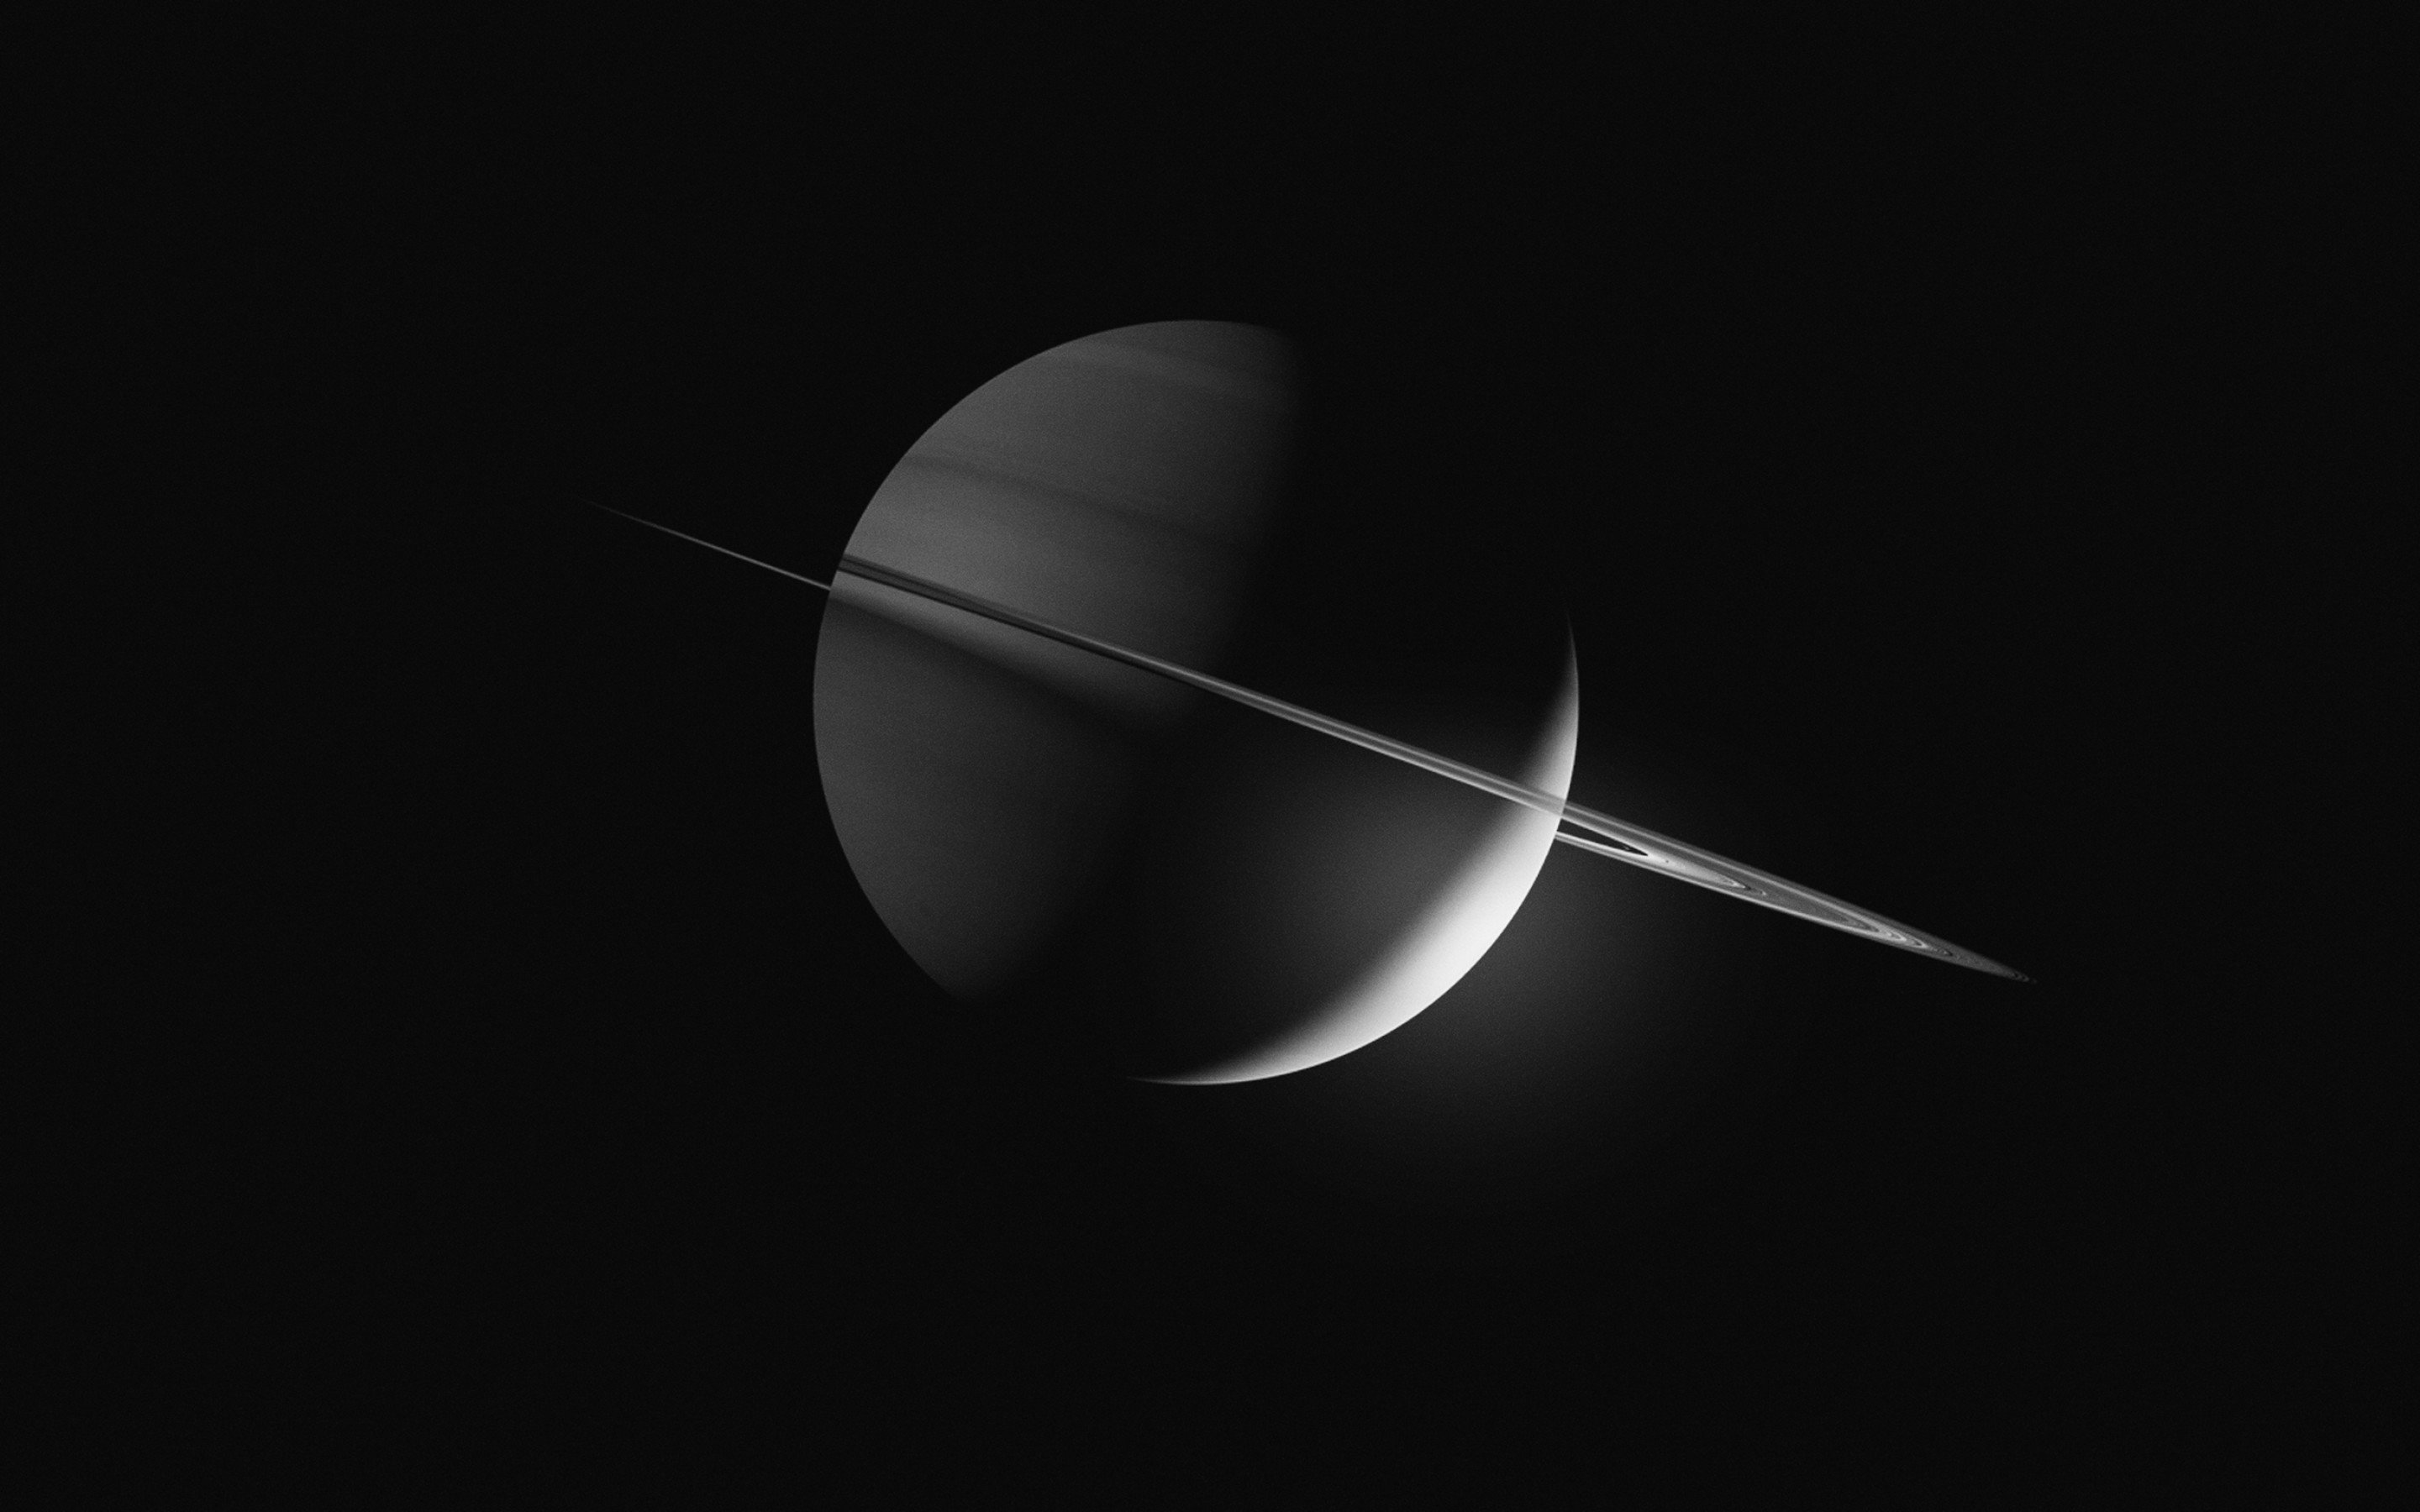 35 Gambar Wallpaper Black and White Planet terbaru 2020 - Miuiku